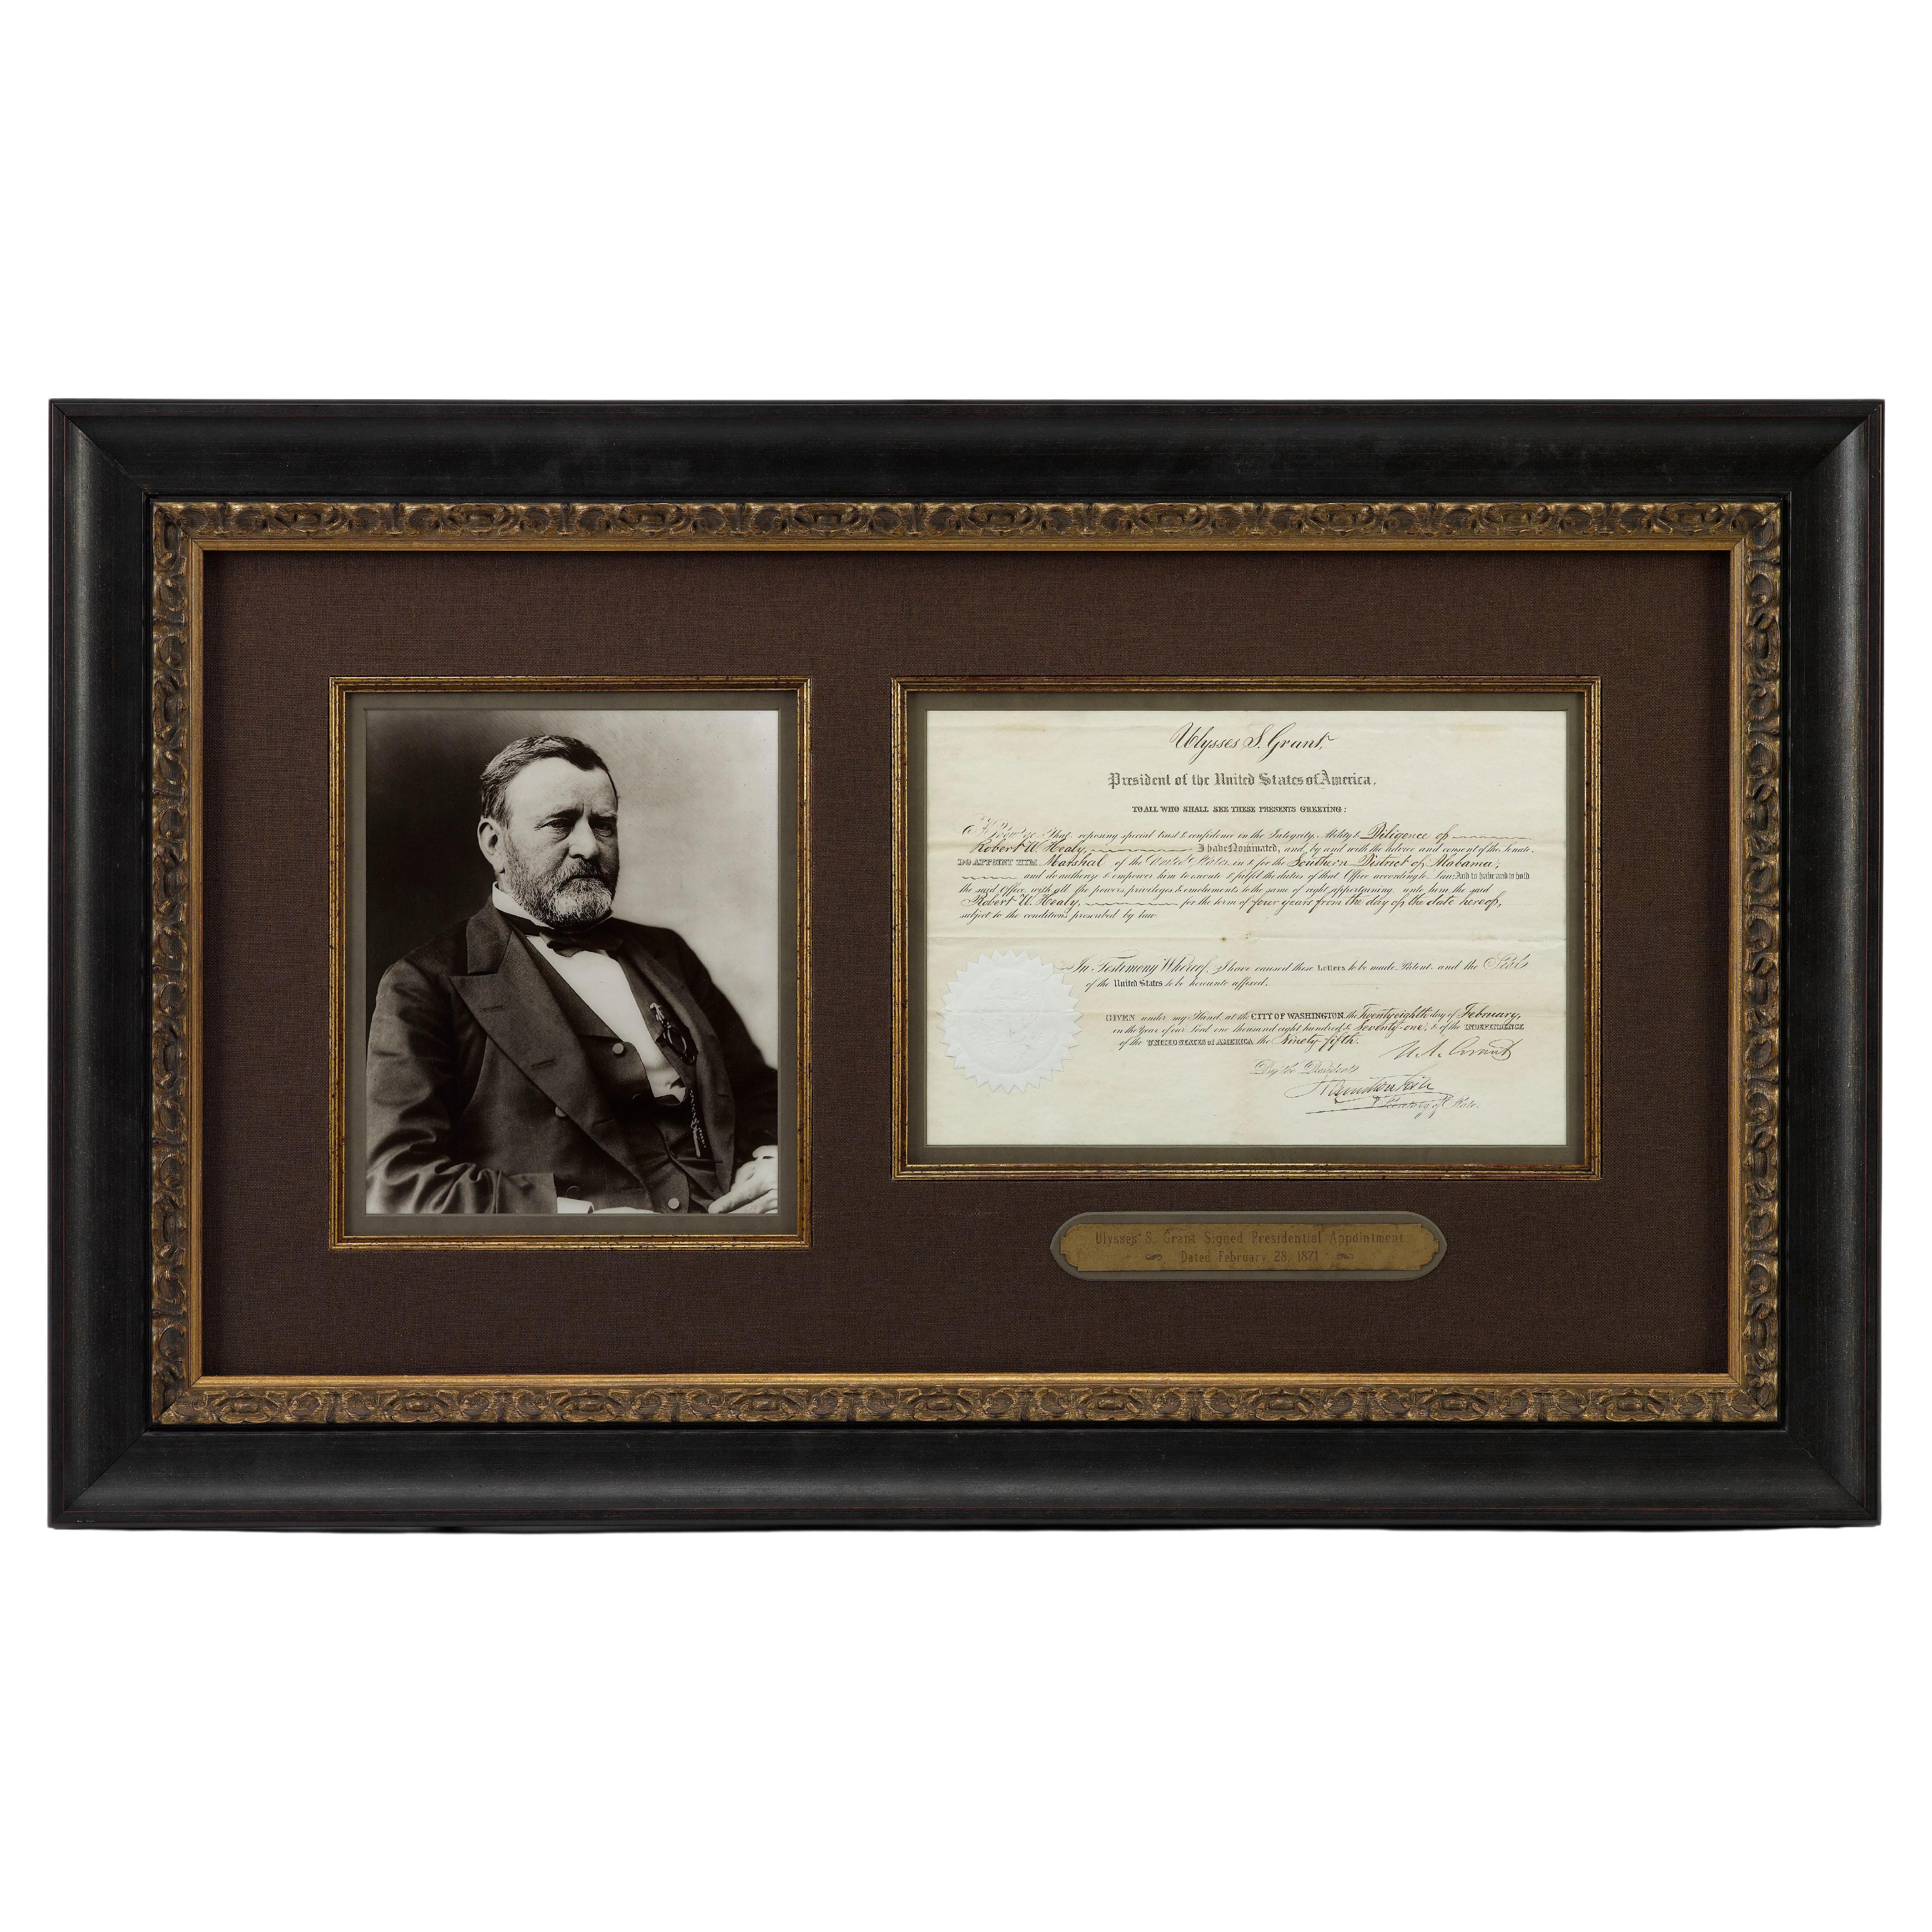 Demande présidentielle signée Ulysses S. Grant, datée du 28 février 1871